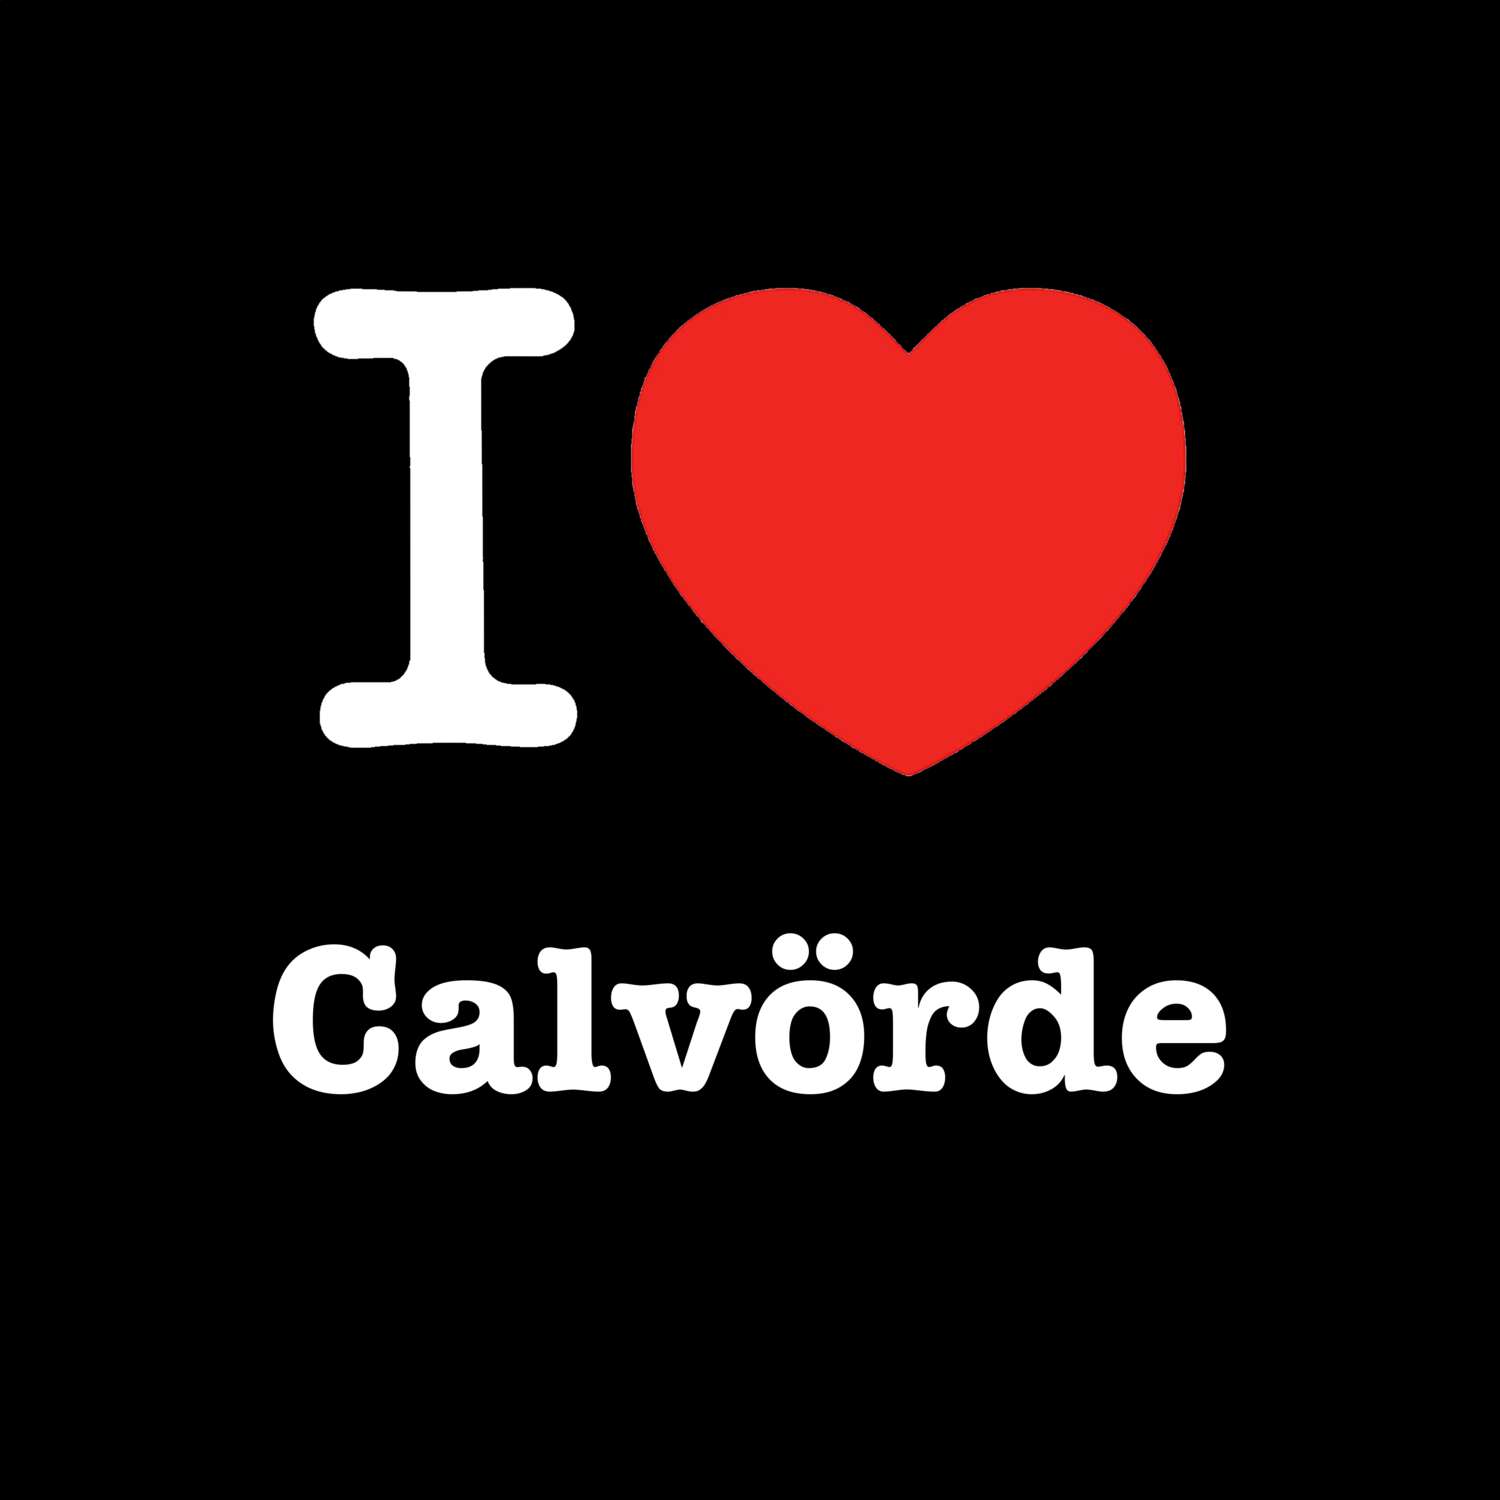 Calvörde T-Shirt »I love«